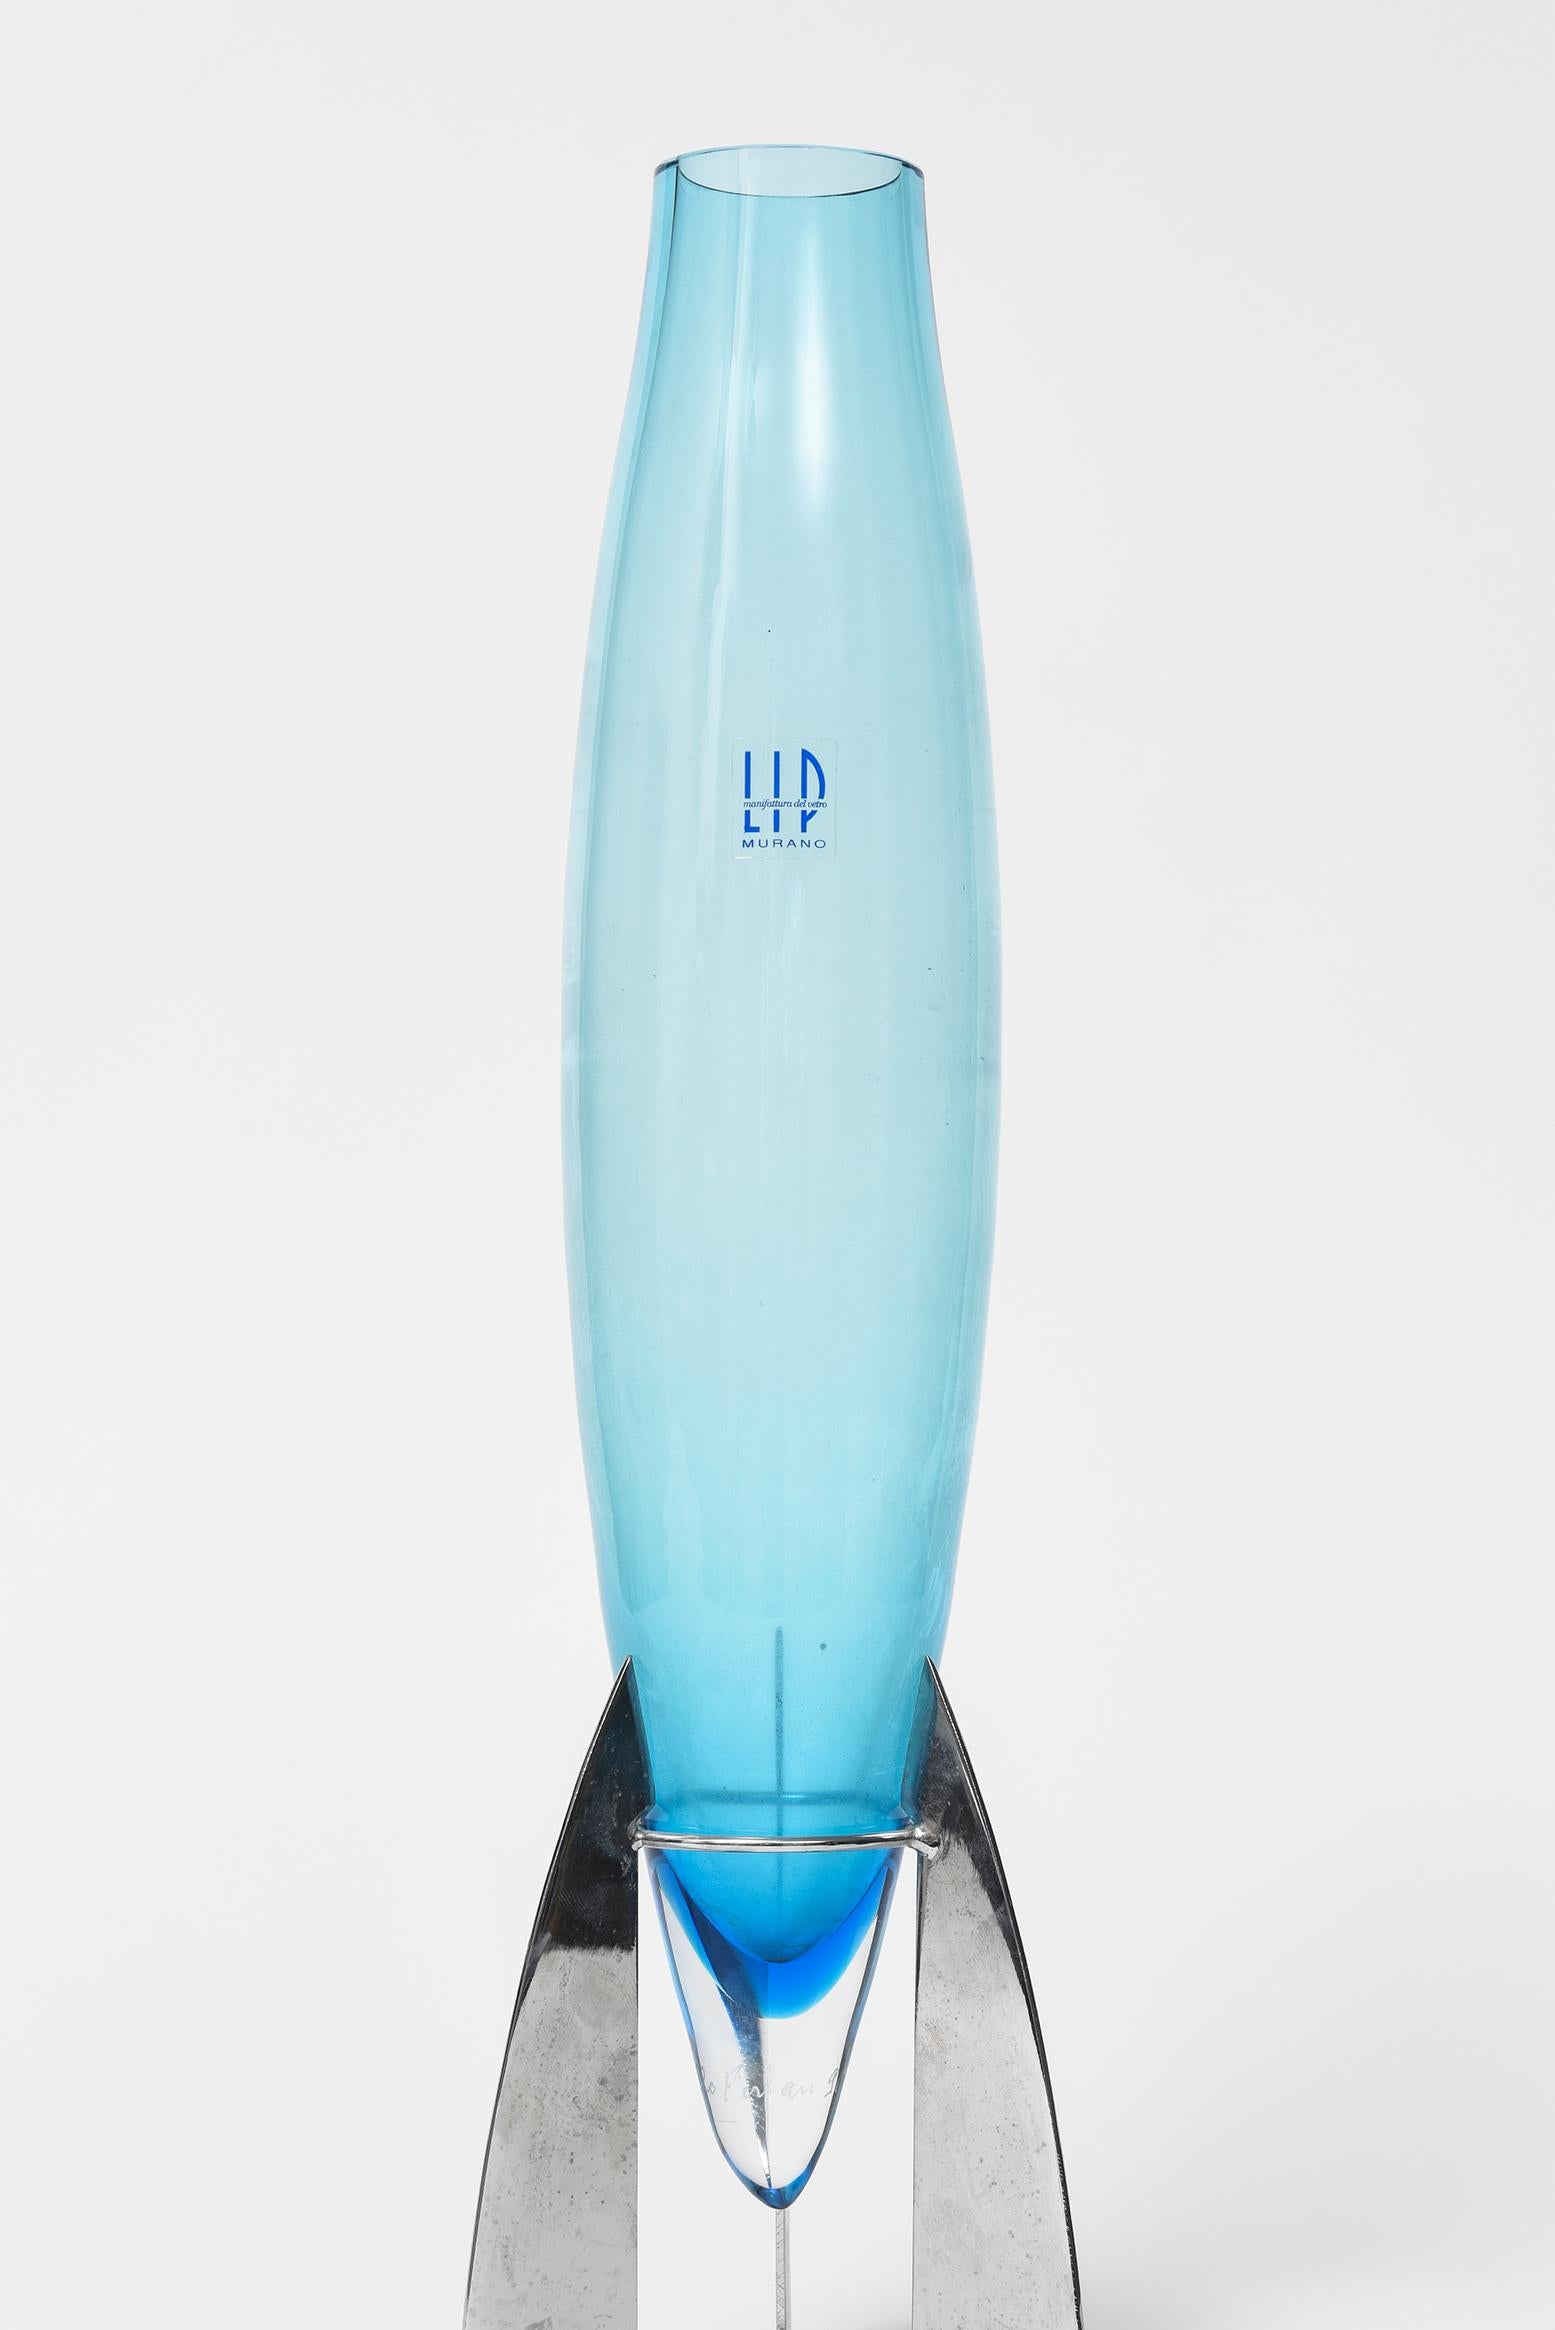 Marcello Furlan LIP Manifattura del Vetro blaue murano italienische Vase mit verchromtem Metallständer. Die Vase sieht aus wie ein industrielles Raketenschiff.

Es hat die ursprüngliche Aufkleber Tag LIP manifattura del vetro Vase und ist auf der